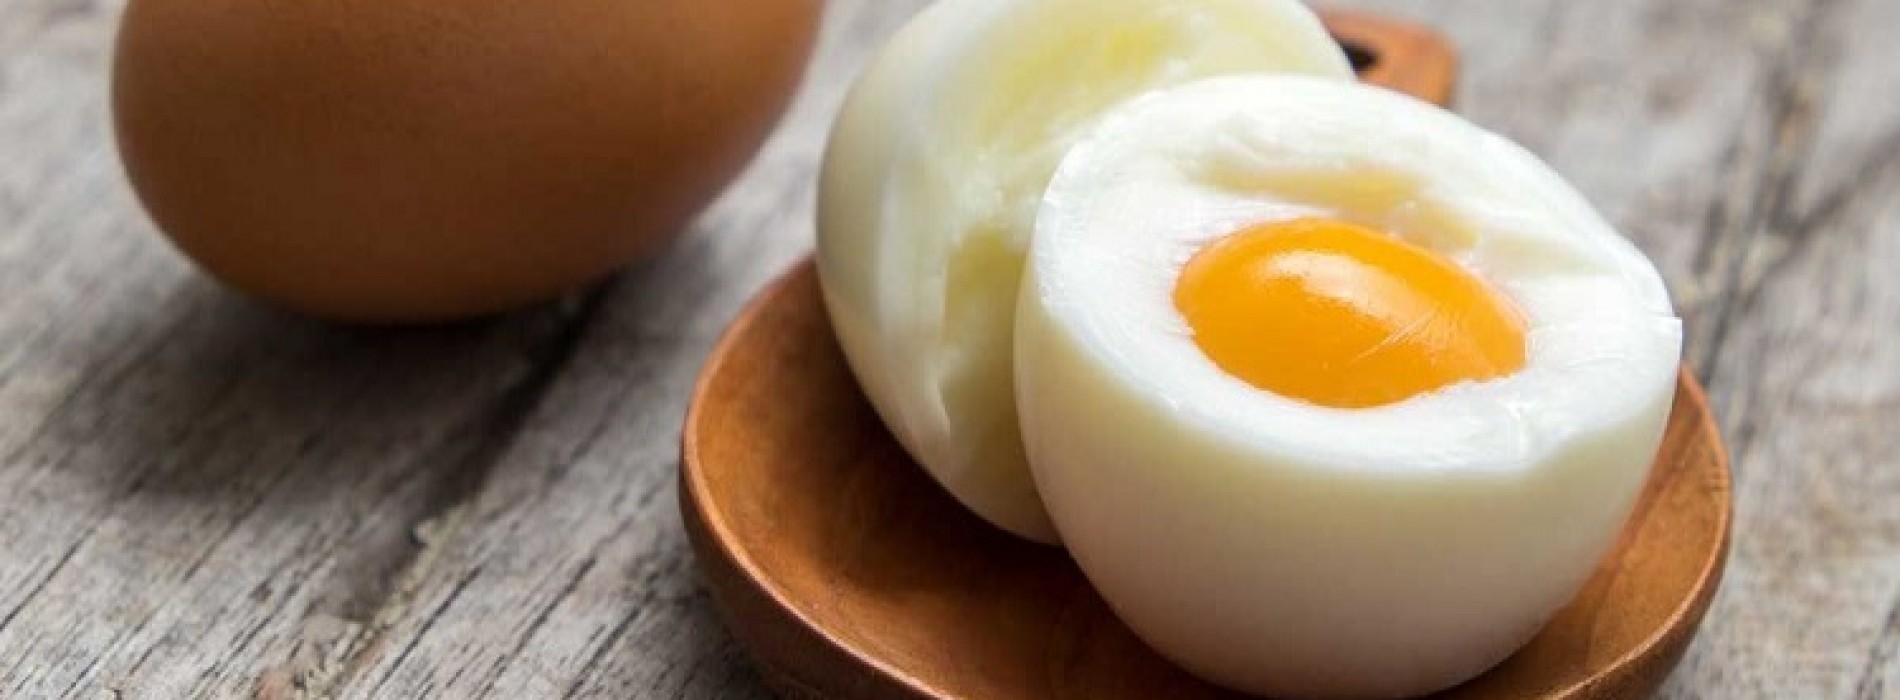 Als je 3 hele eieren per dag eet, zal je versteld staan wat het met je lichaam doet!